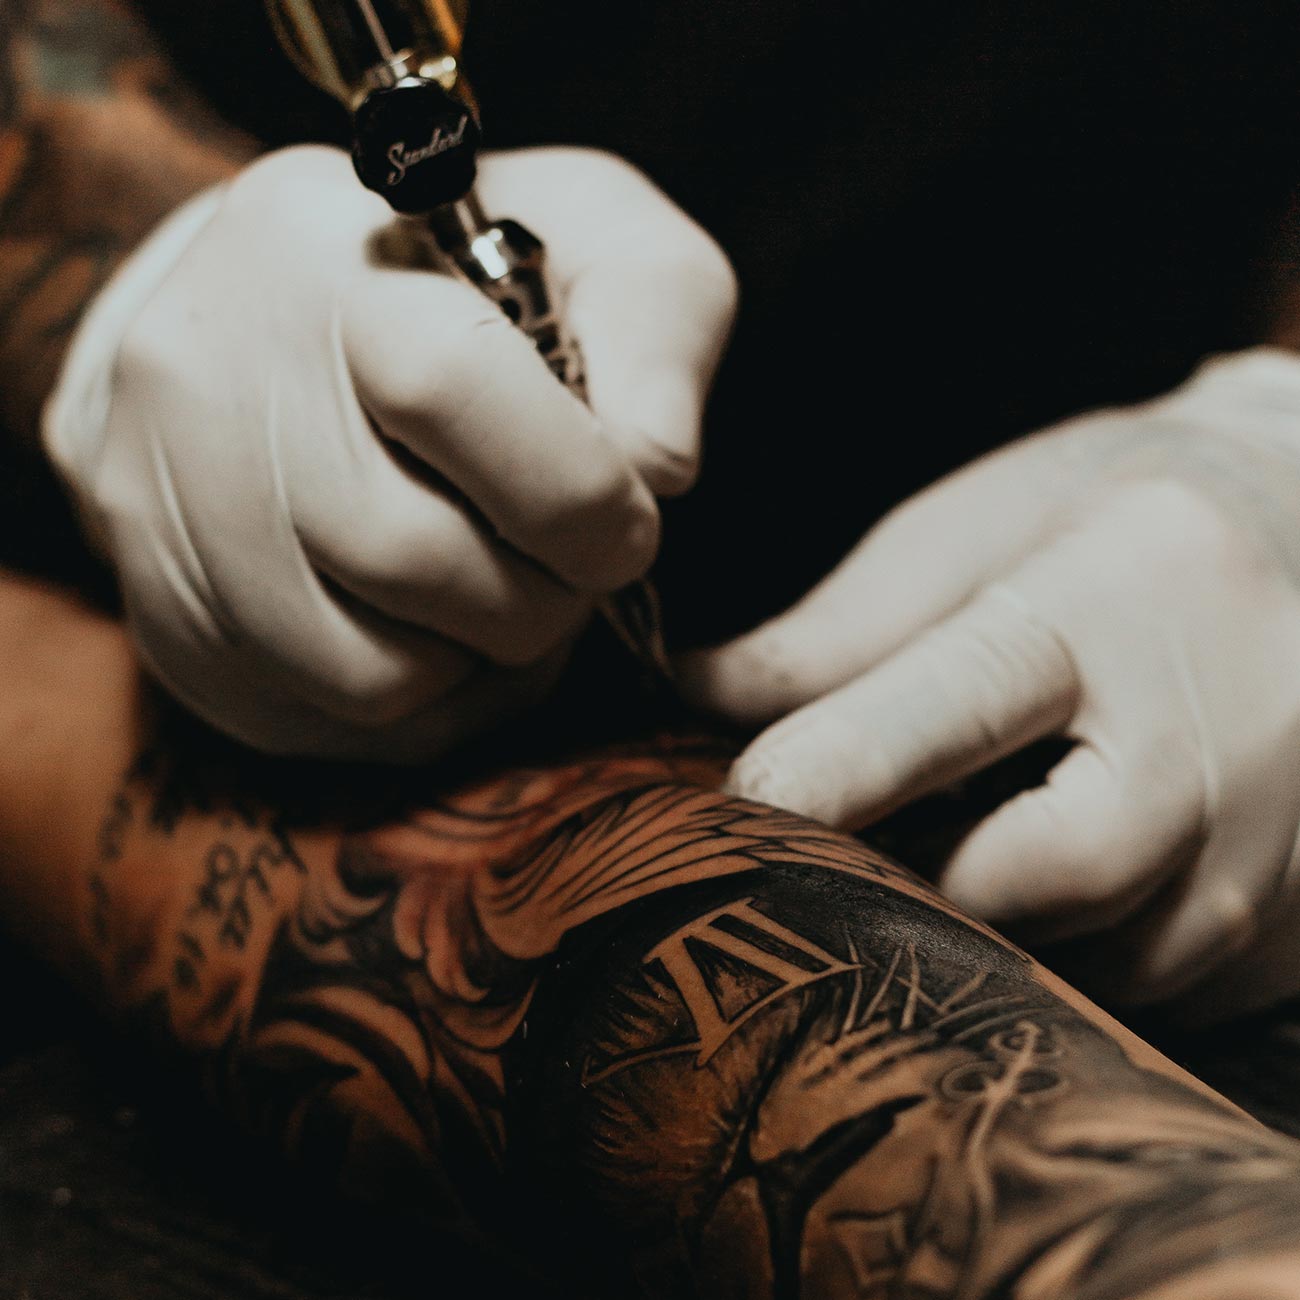 tattoo artist create tattoo on arm